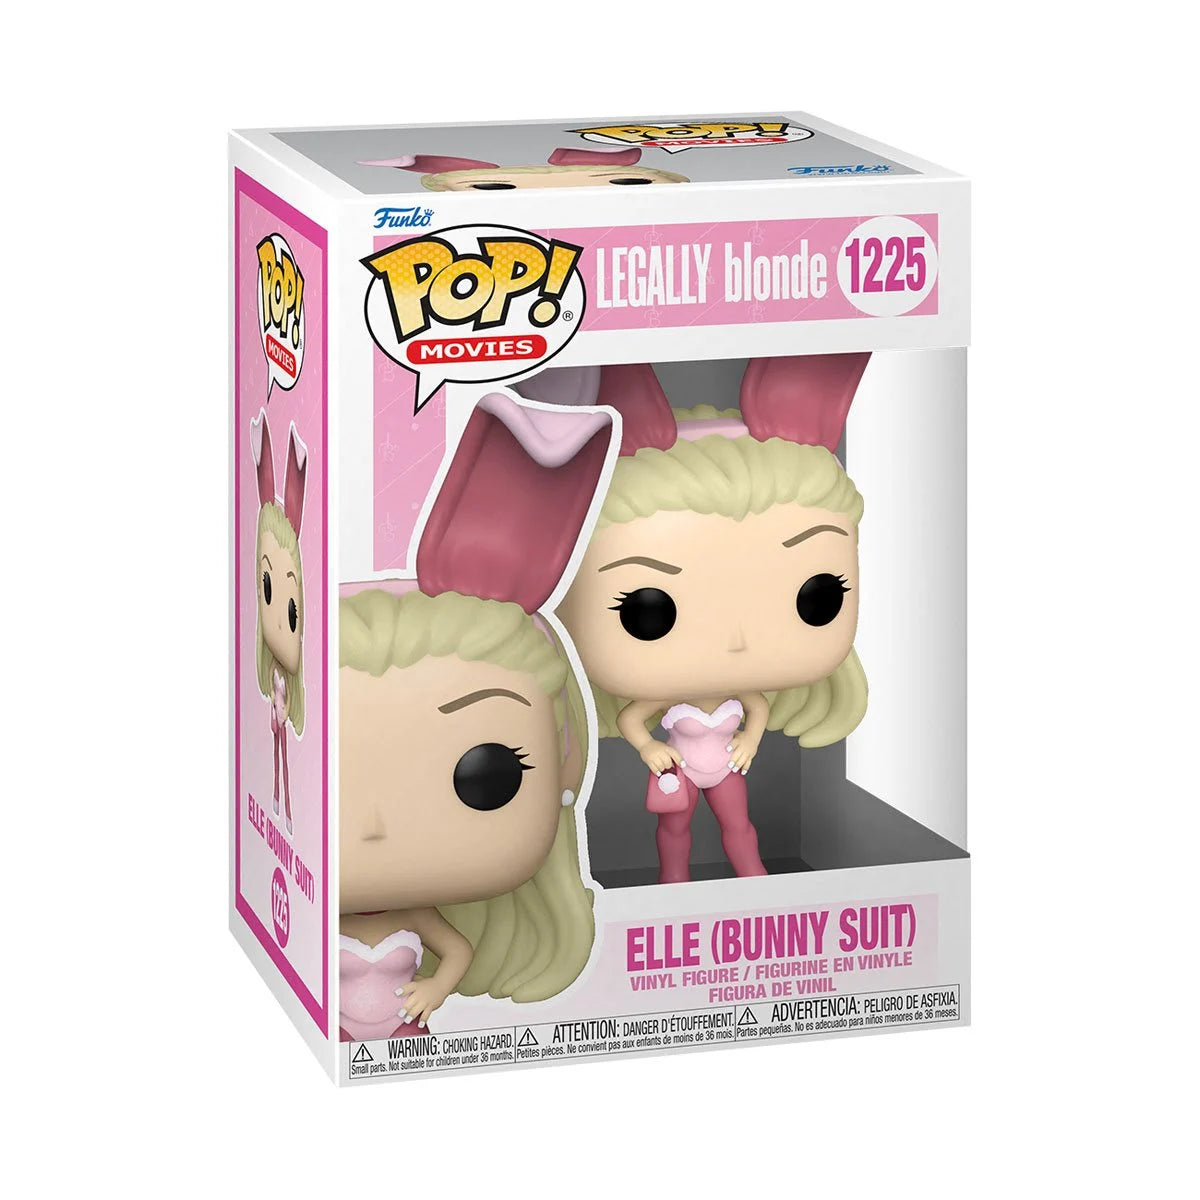 Legally Blonde Elle Woods (Bunny Suit) Pop! Vinyl Figure - D-Pop